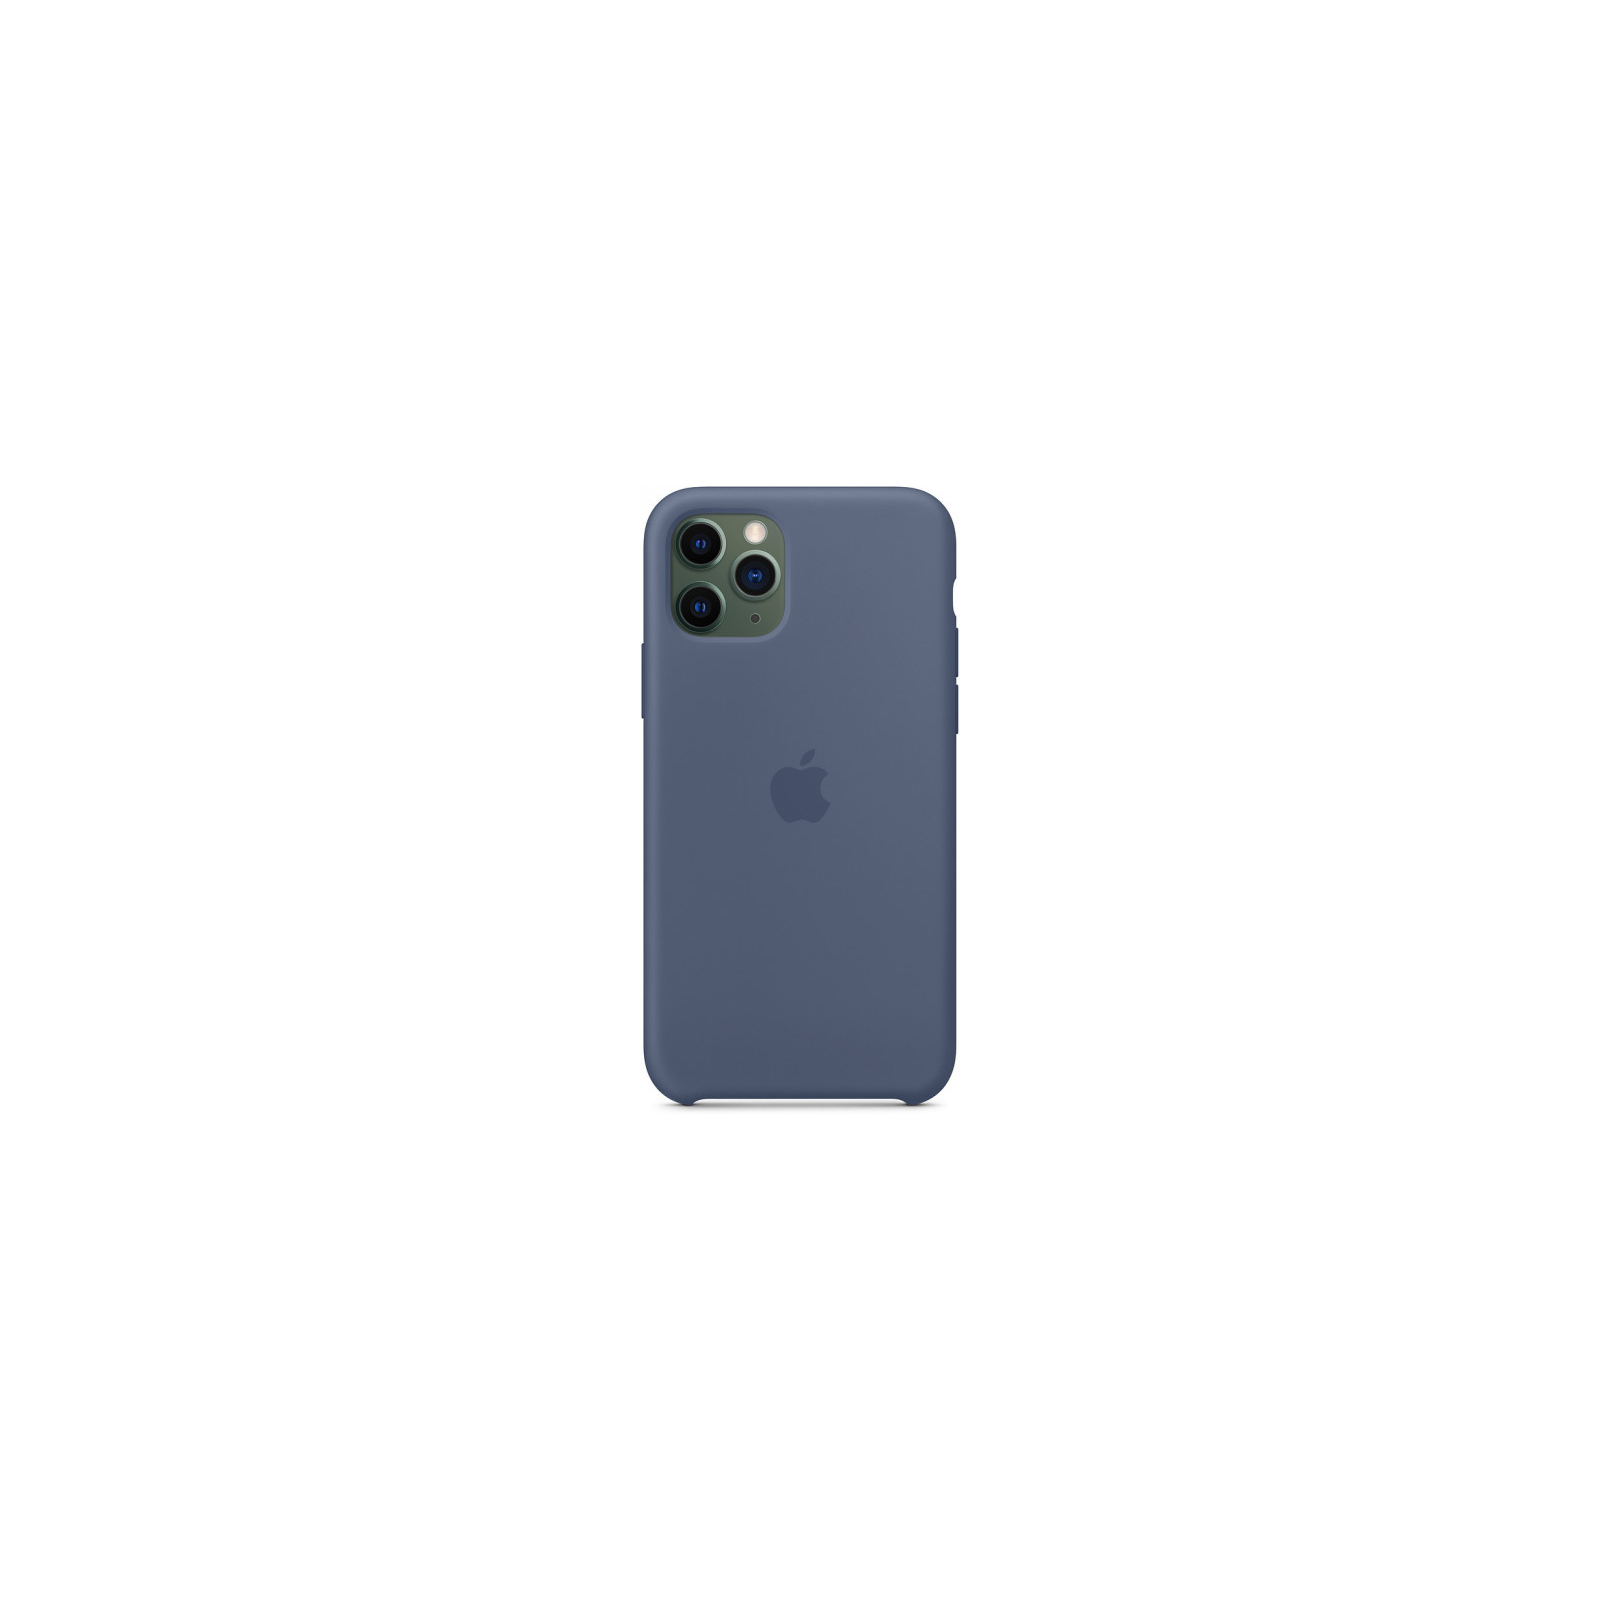 Чехол для мобильного телефона Apple iPhone 11 Pro Silicone Case - Alaskan Blue (MWYR2ZM/A) изображение 3